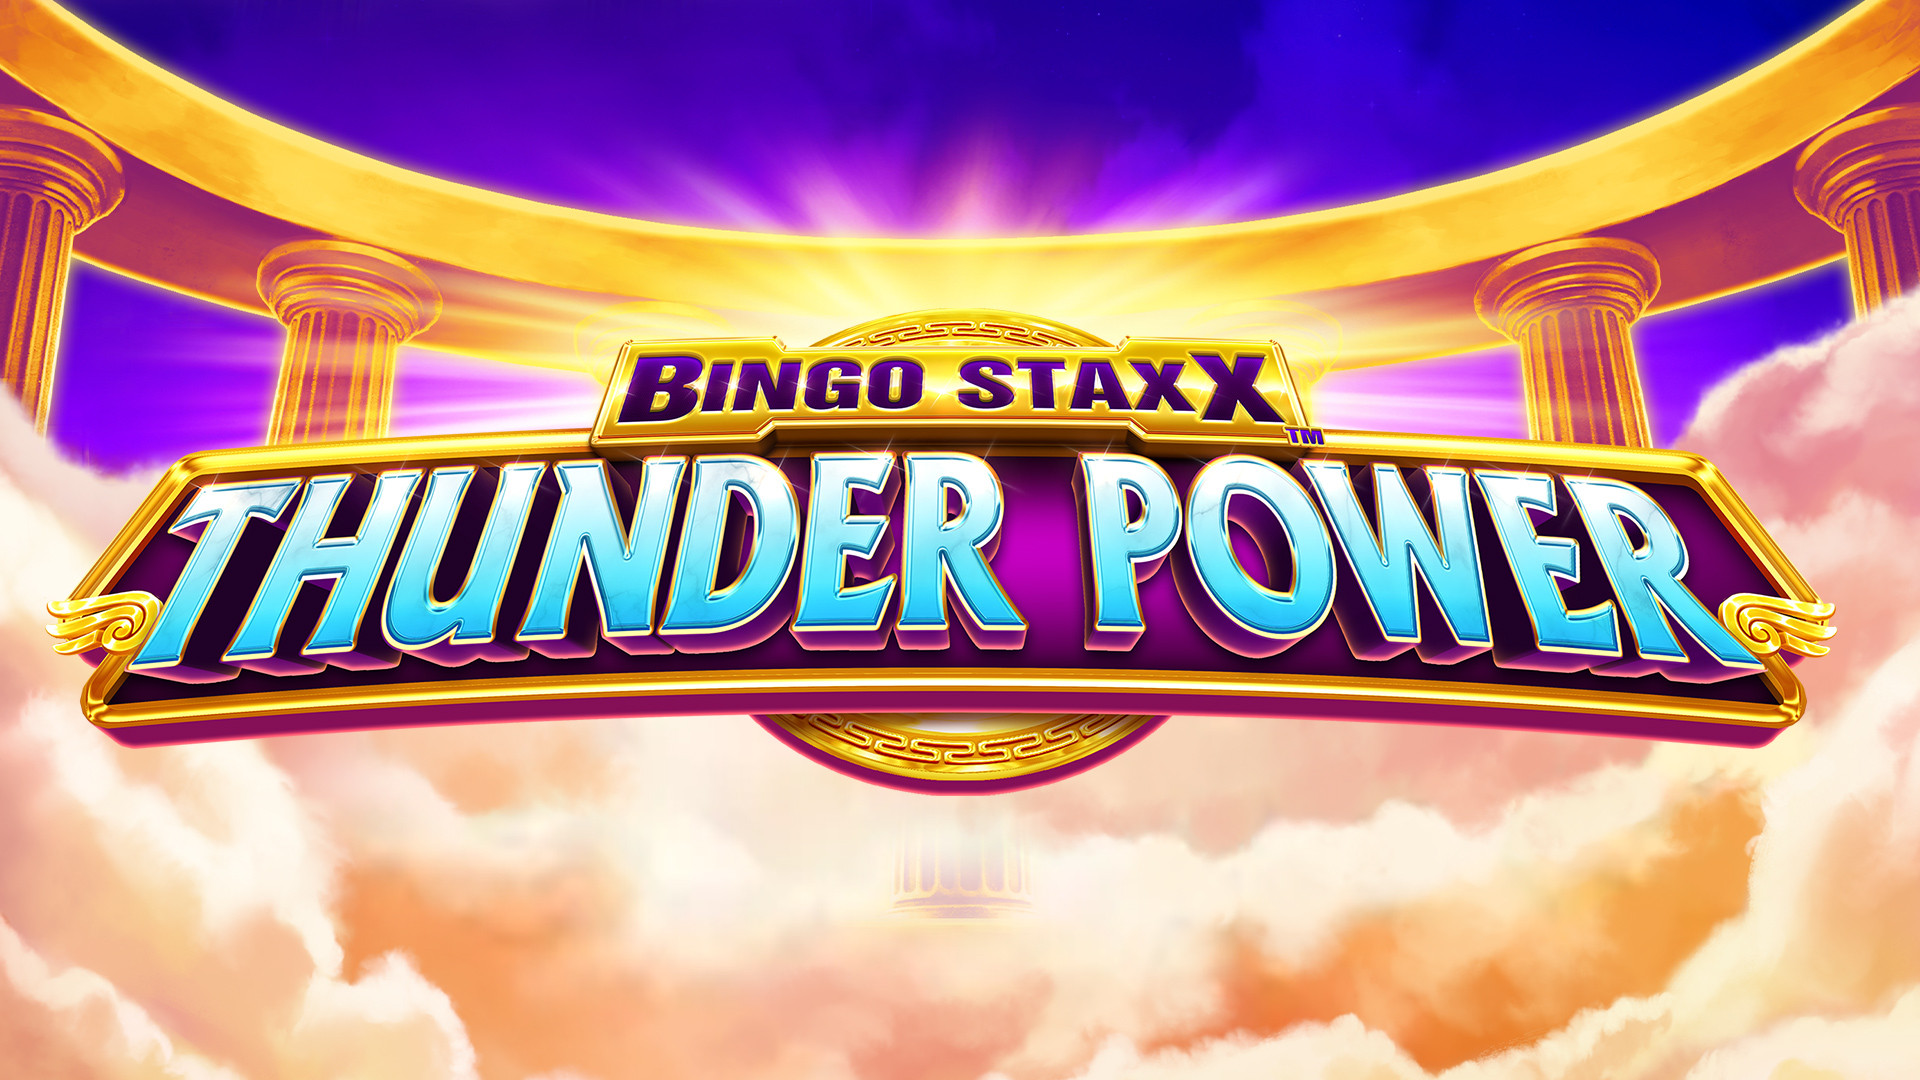 BINGO STAXX Thunder Power